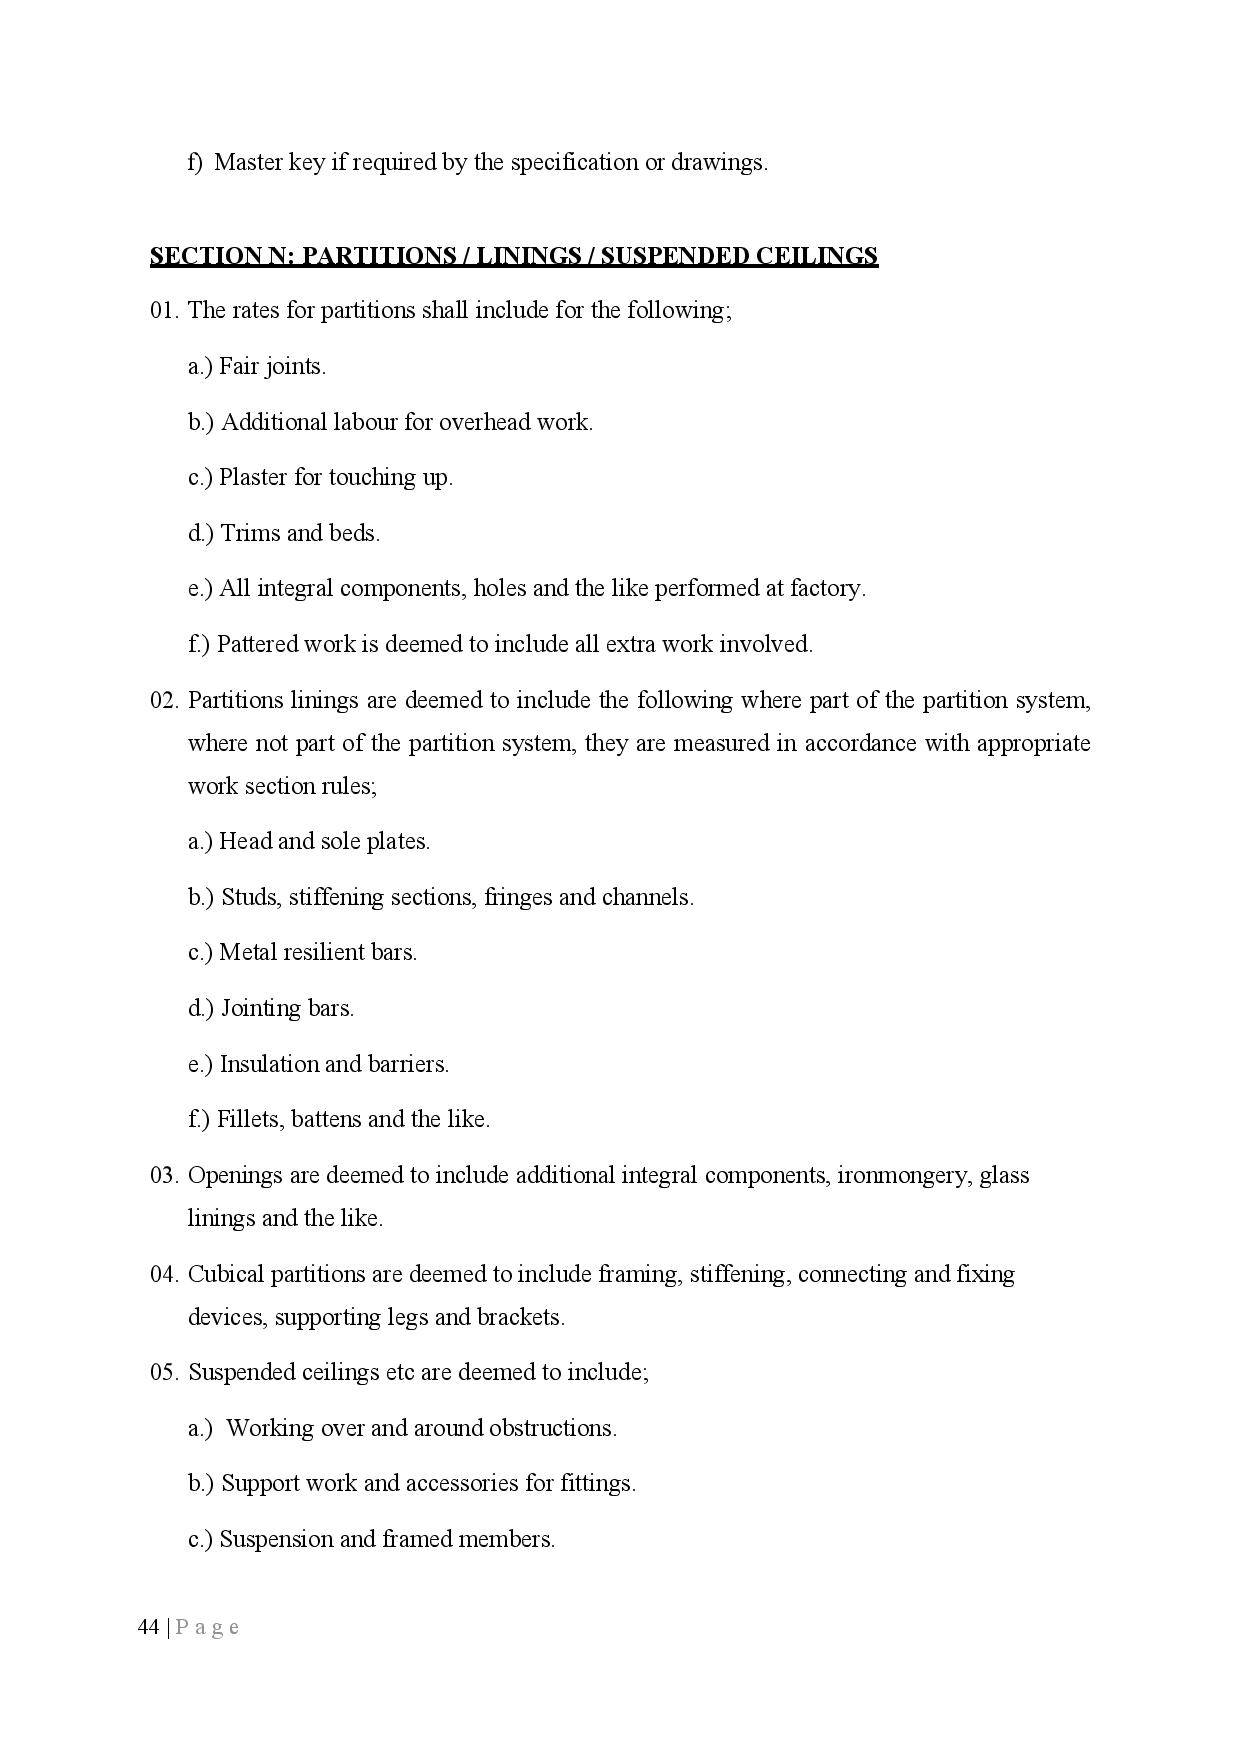 Preamble page 021